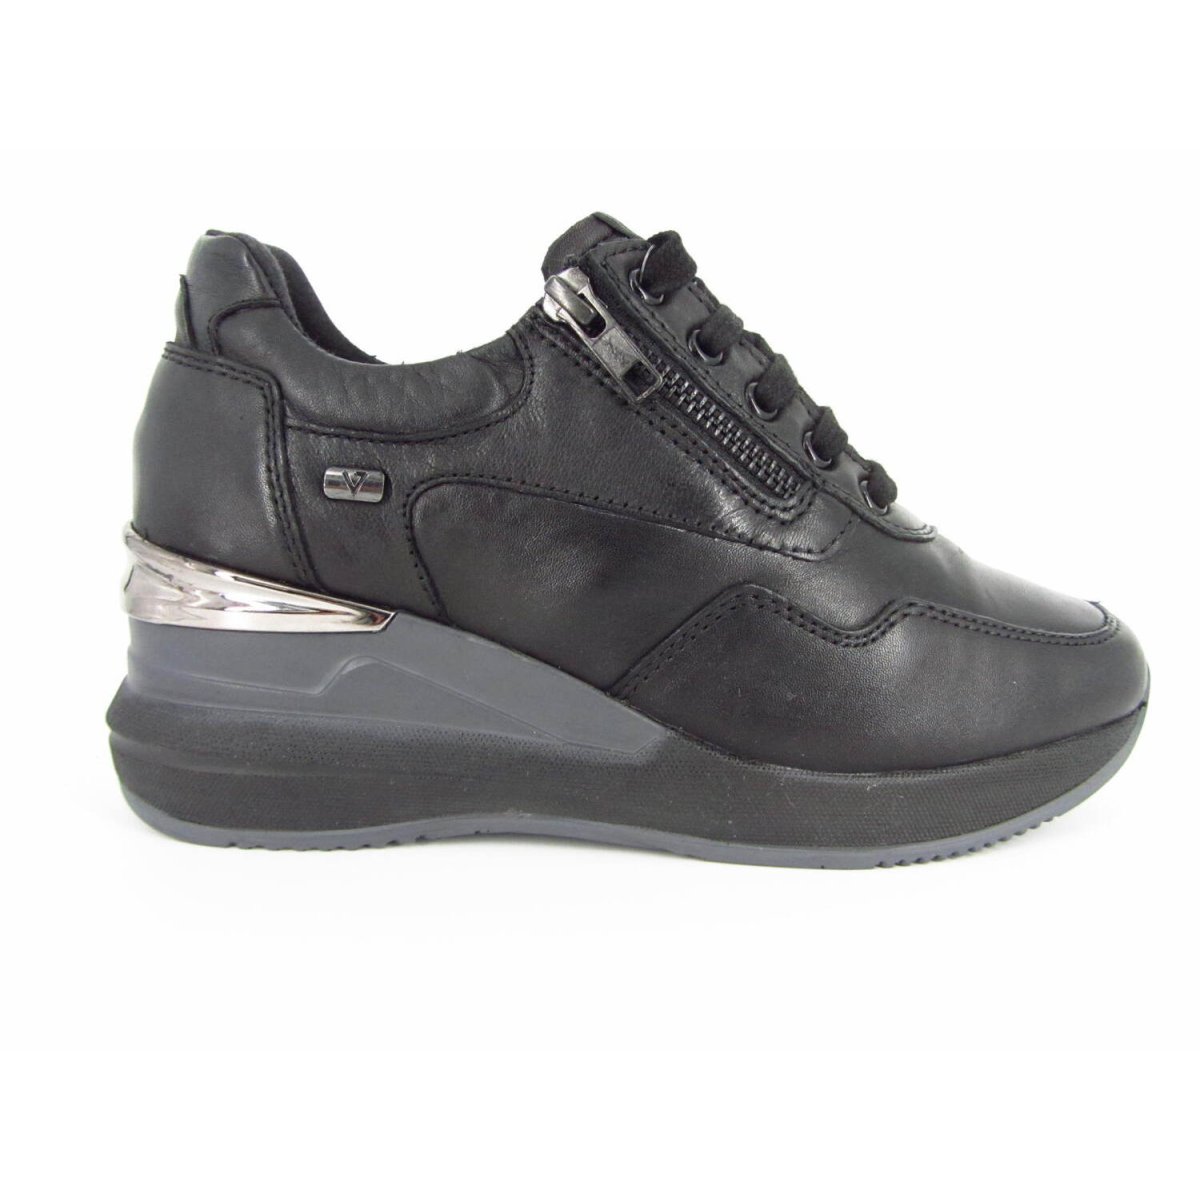 Valleverde 36273 - Sneakers Zeppa Donna